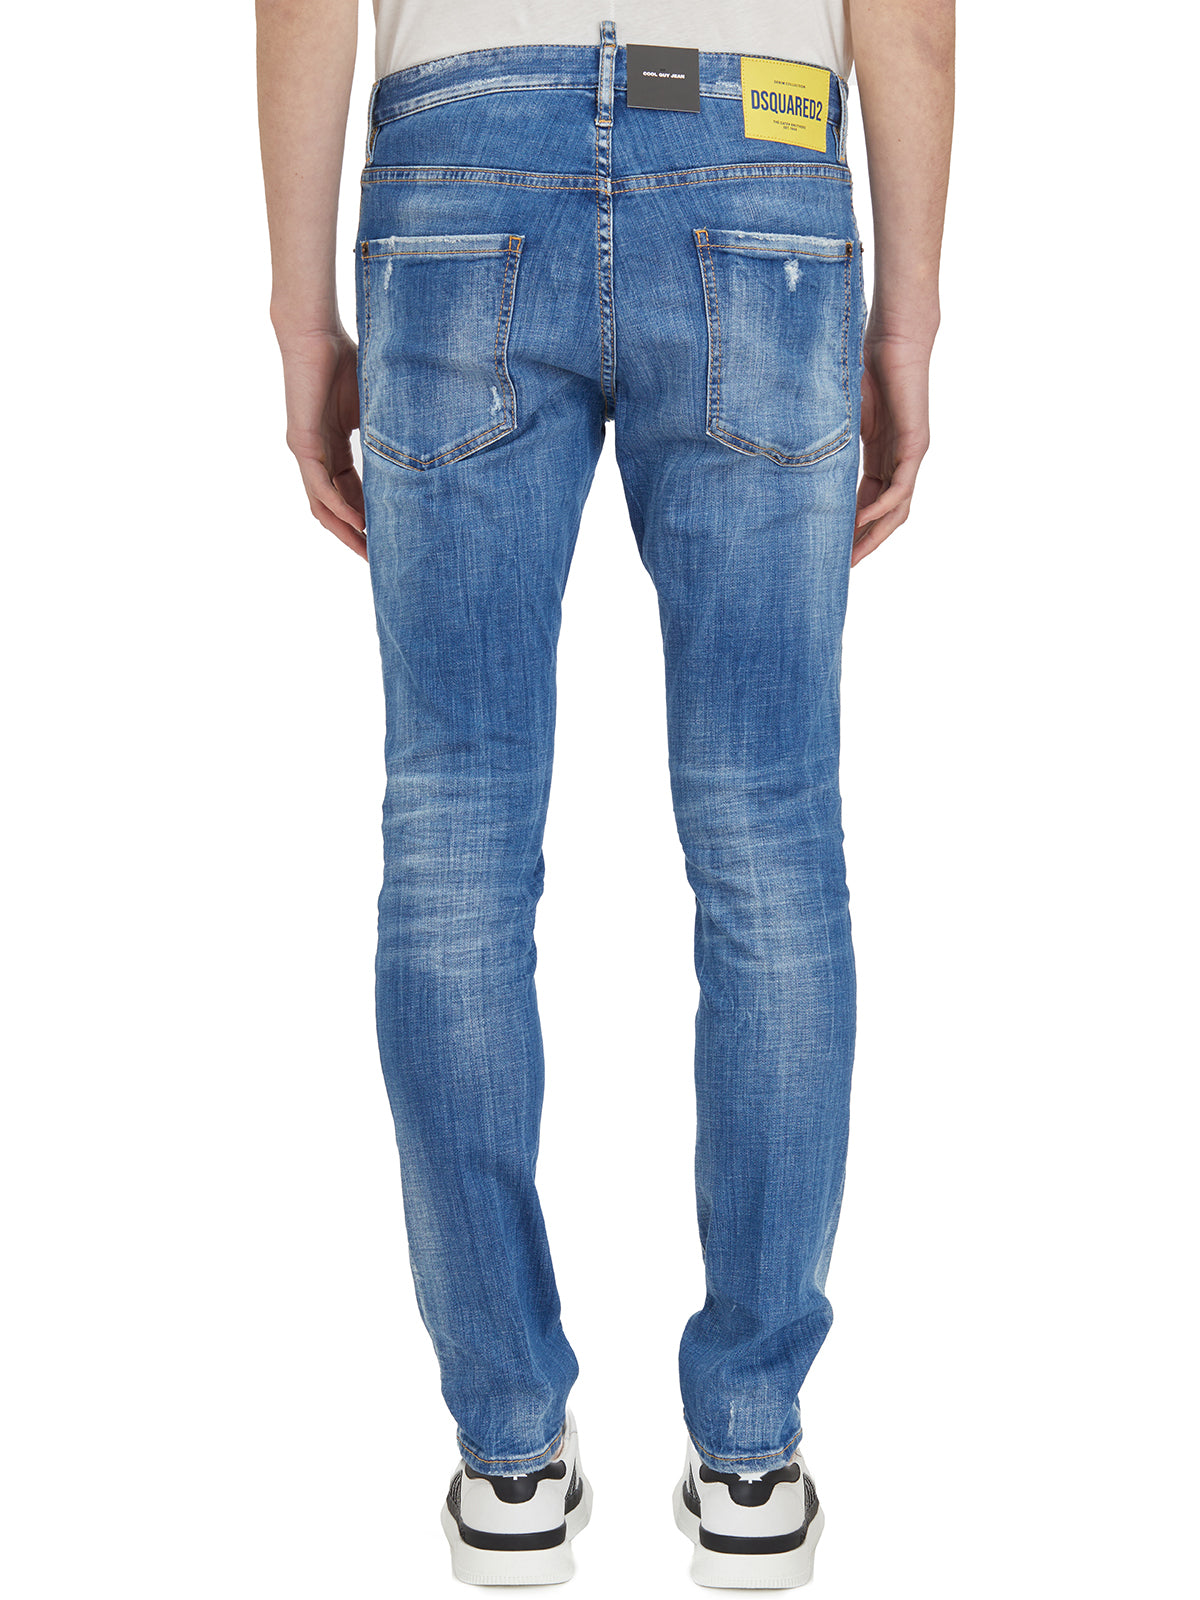 سروال جينز رجالي أزرق ممتد 5 جيوب بقصة متوسطة مع حلقات للحزام و بقياس 46